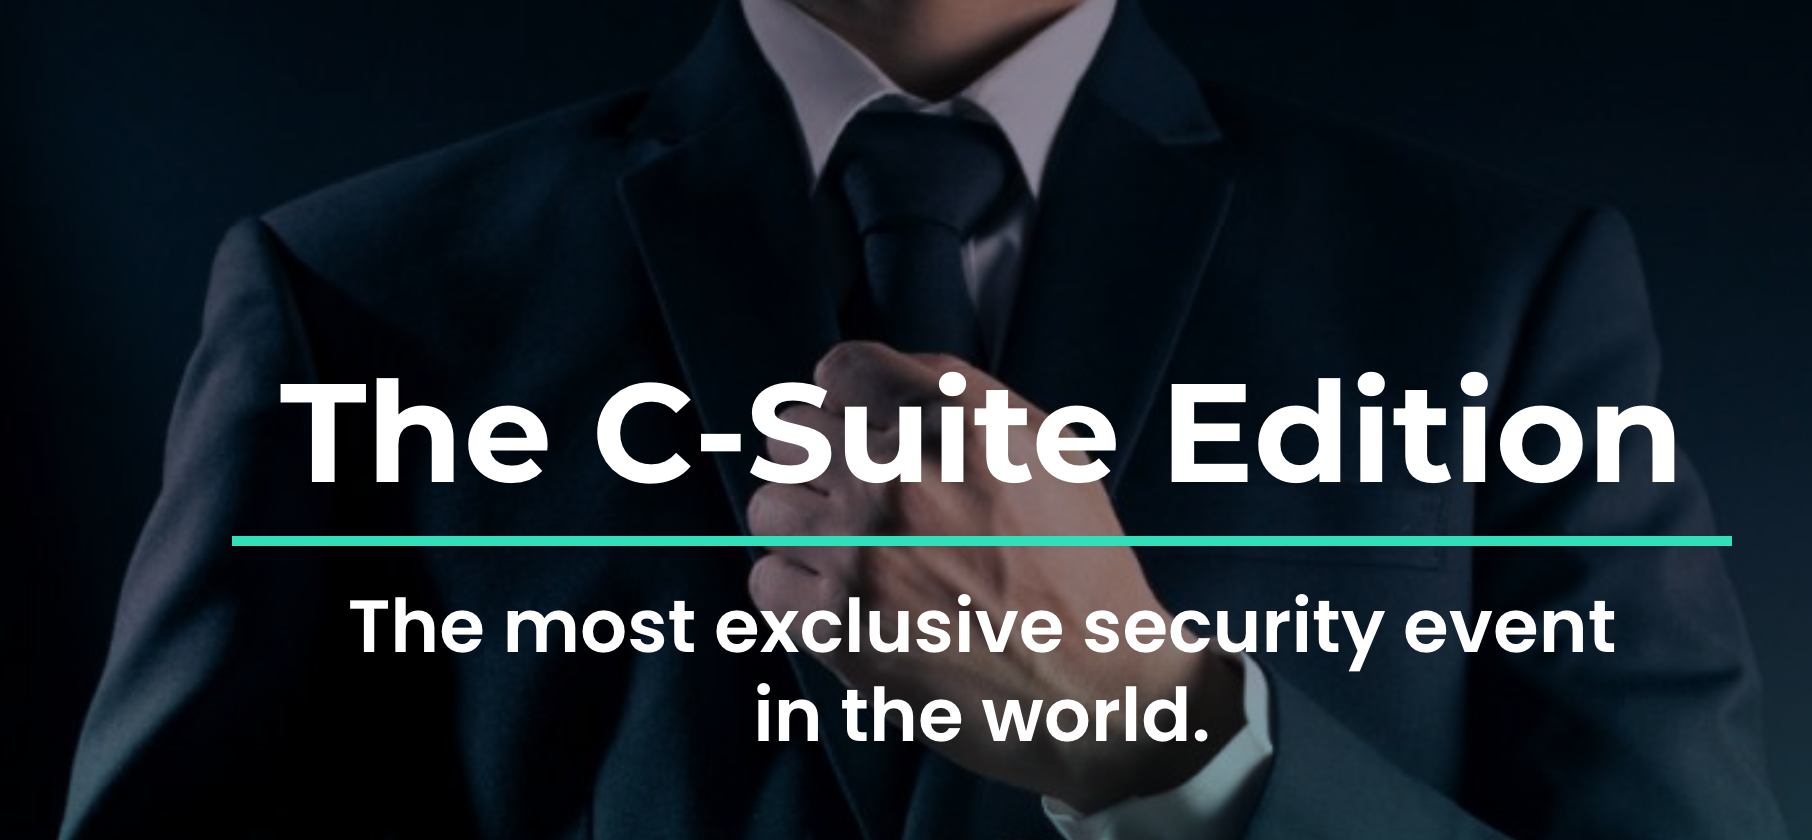 Next IT Security: The C-Suite Edition, Stockholm, Sweden